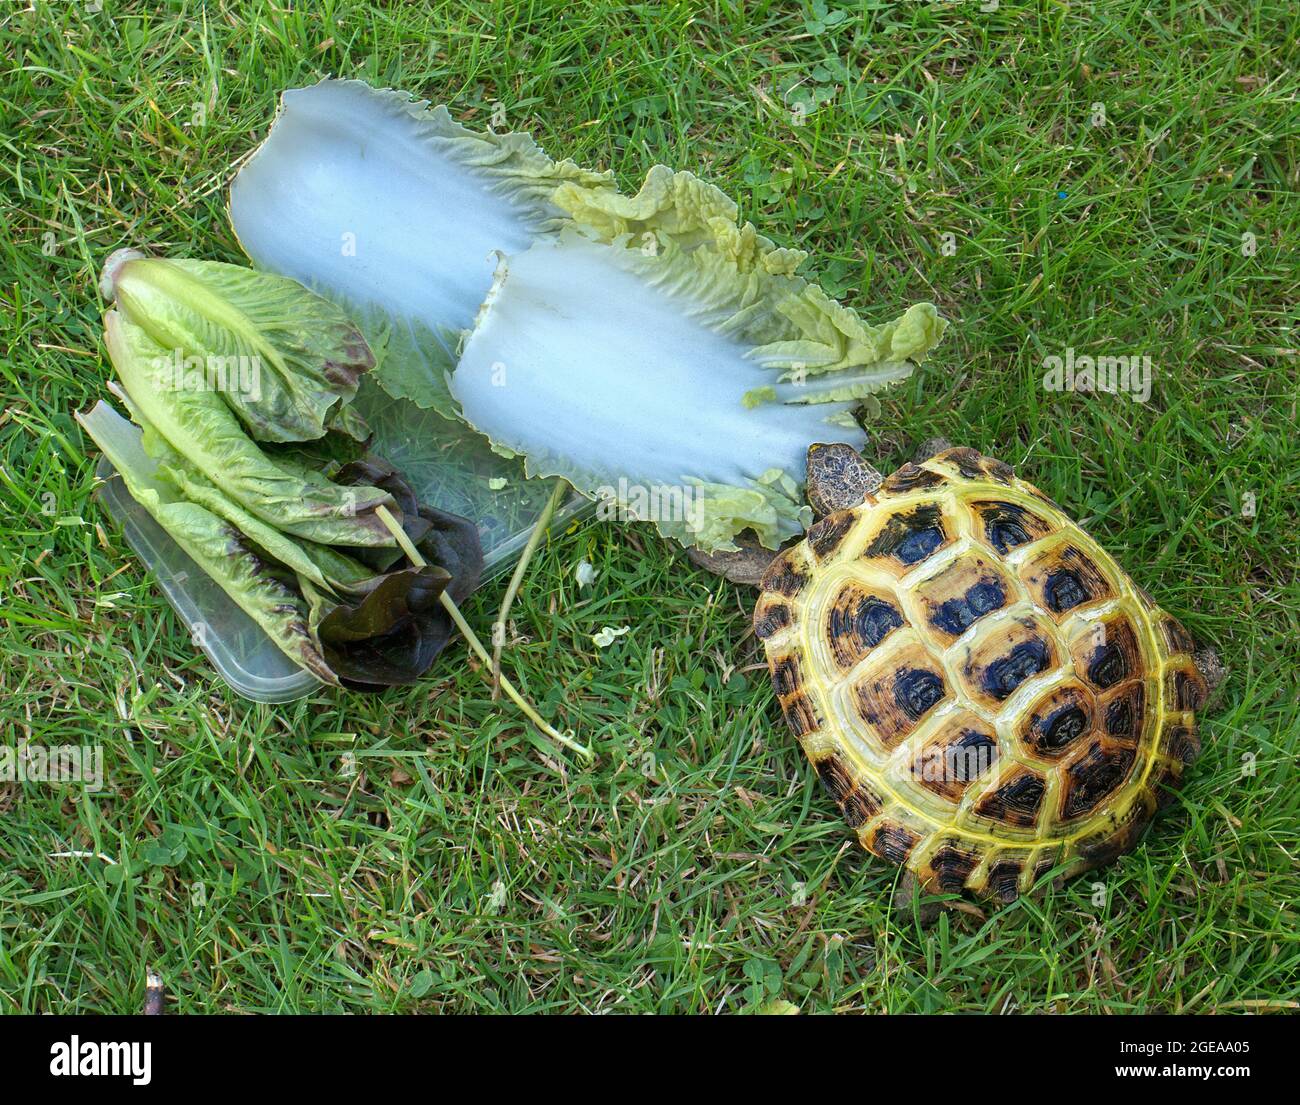 Petite tortue dans le jardin mangeant des feuilles de chou chinois Banque D'Images